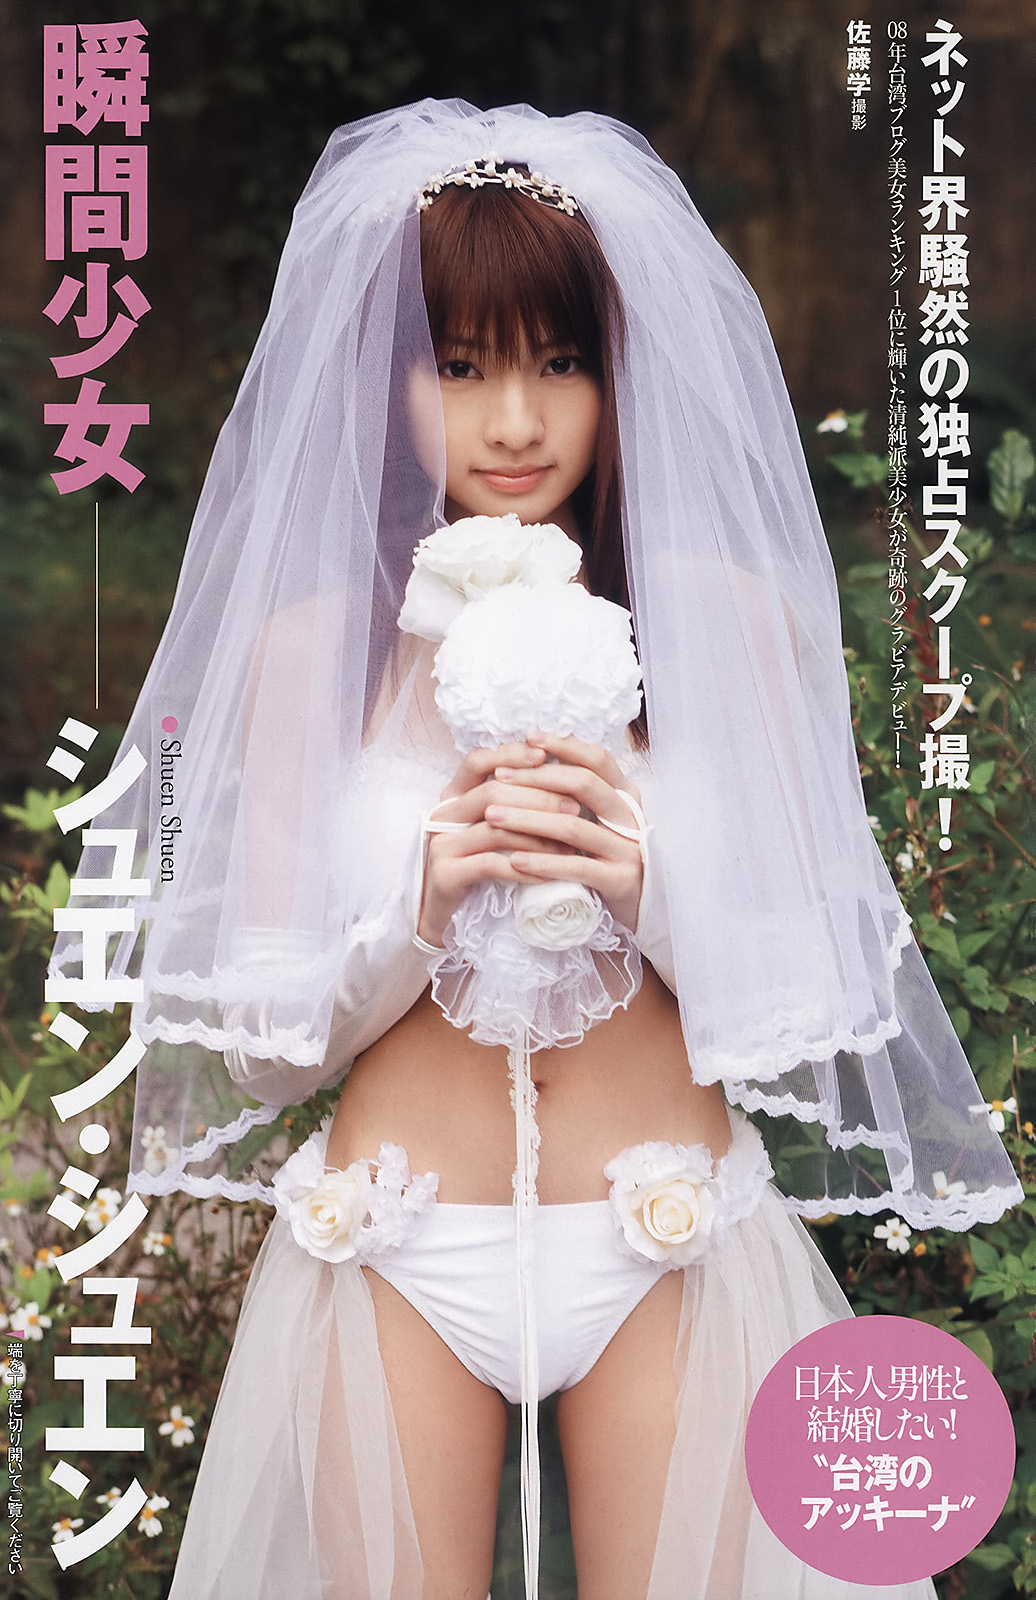 японская свадьба эротика фото 56